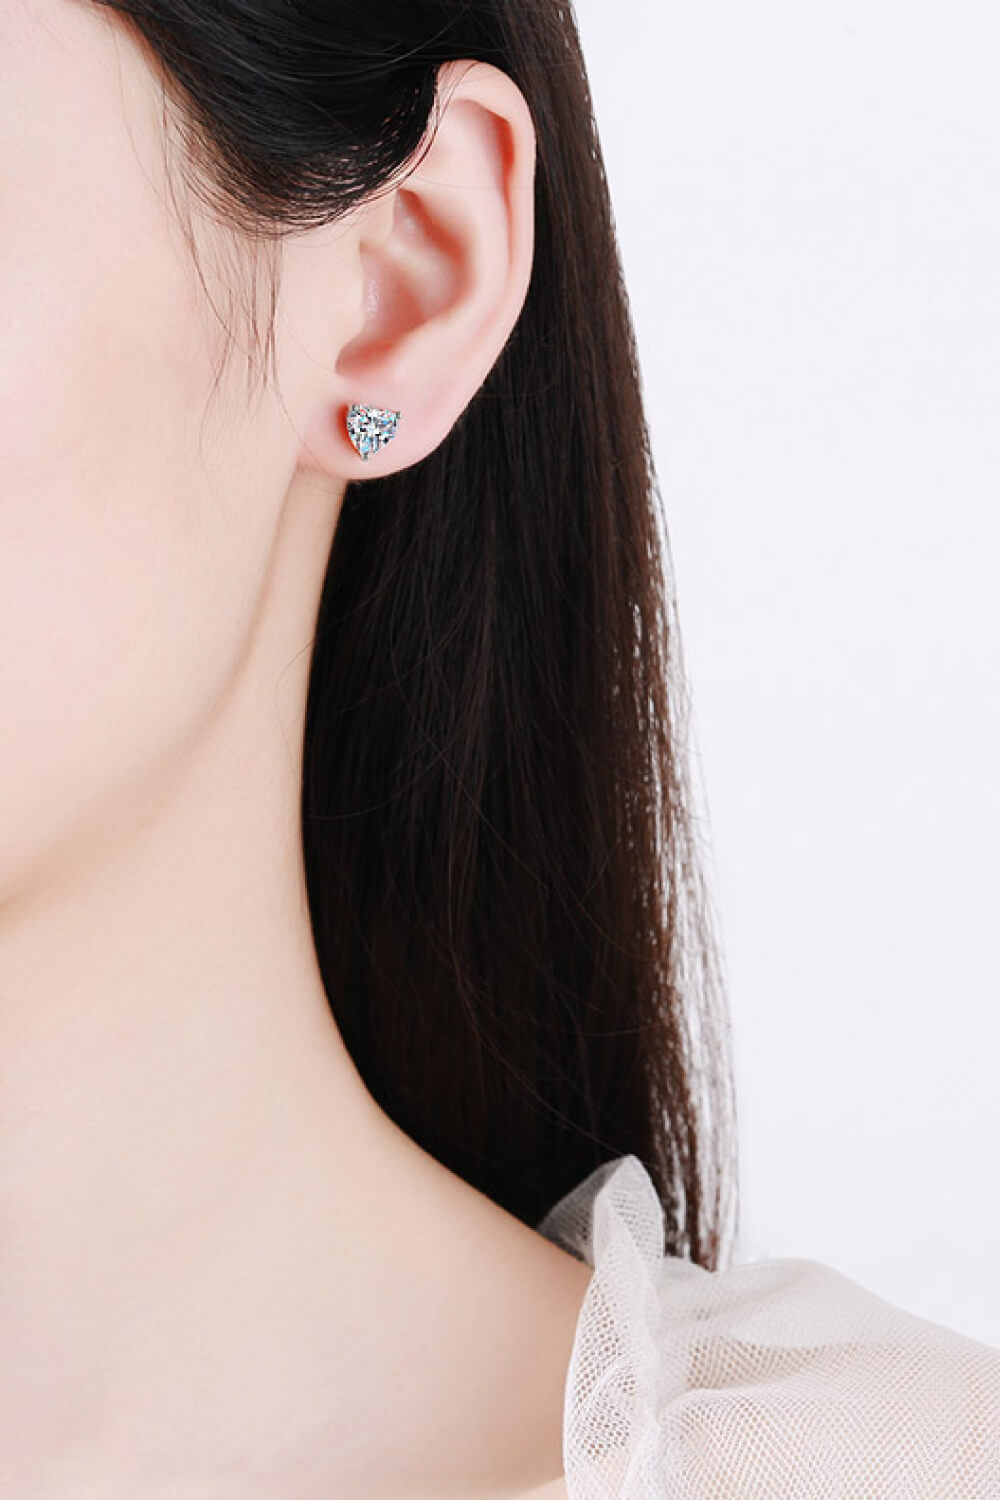 Women's 2 Carat Moissanite Heart-Shaped Stud Earrings